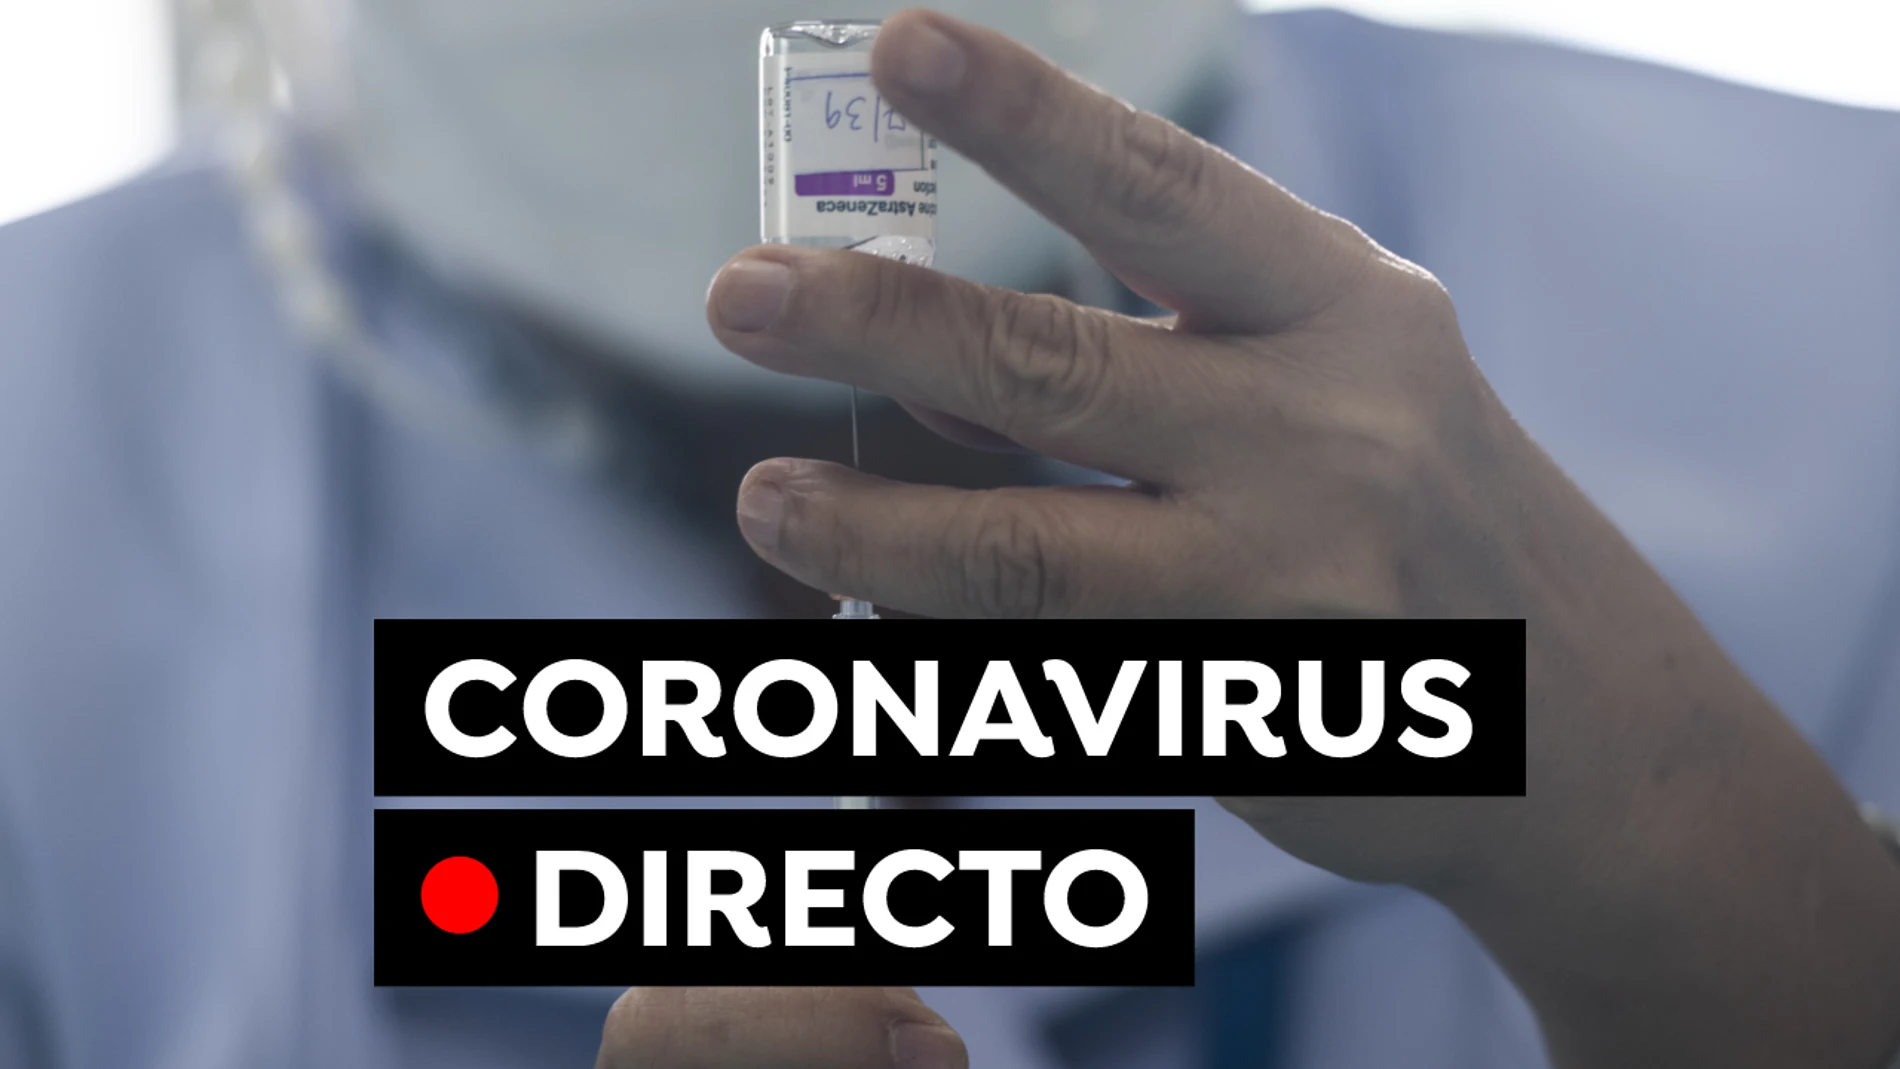 Coronavirus en España hoy: Cita para la vacuna, uso de la mascarilla y última hora de las restricciones, en directo